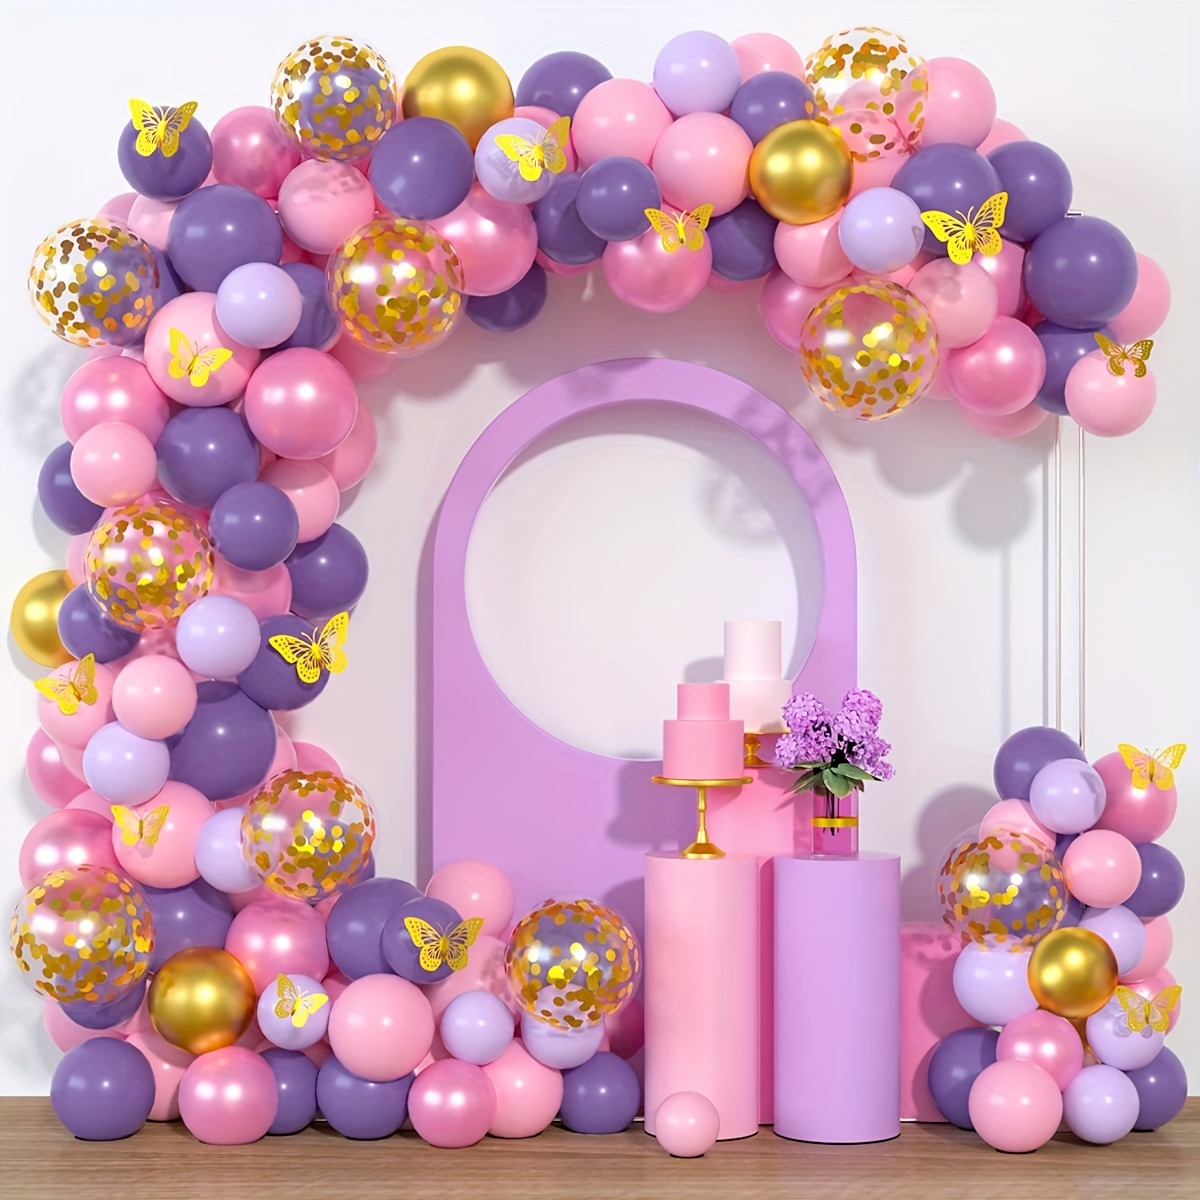  Decoraciones de baby shower para niña, decoraciones de mariposa  para baby shower para niña, kit de arco de guirnalda de globos de mariposa  rosa y morado, globos para baby shower 